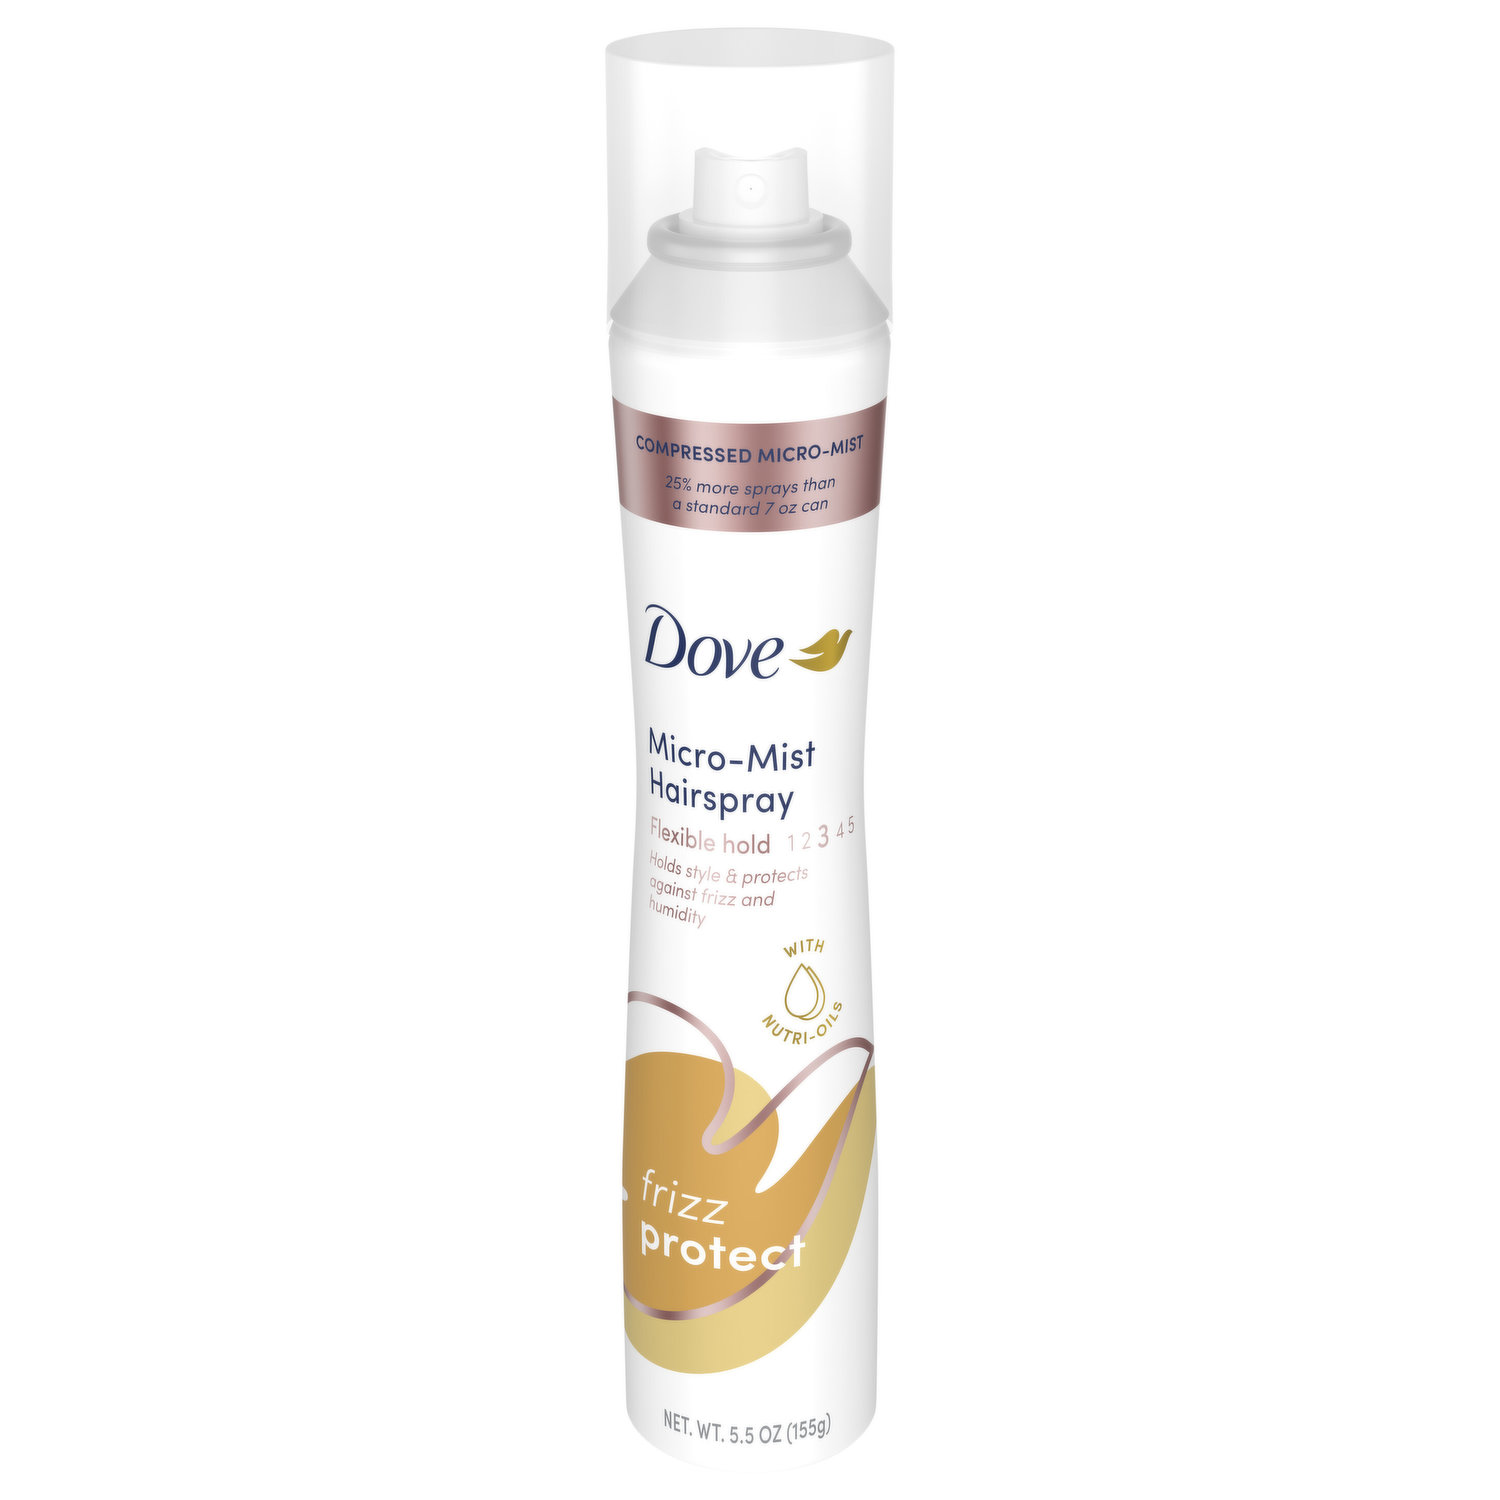 Camel Fixative Spray-200ml-Adhesive Spray-Palette Buddy